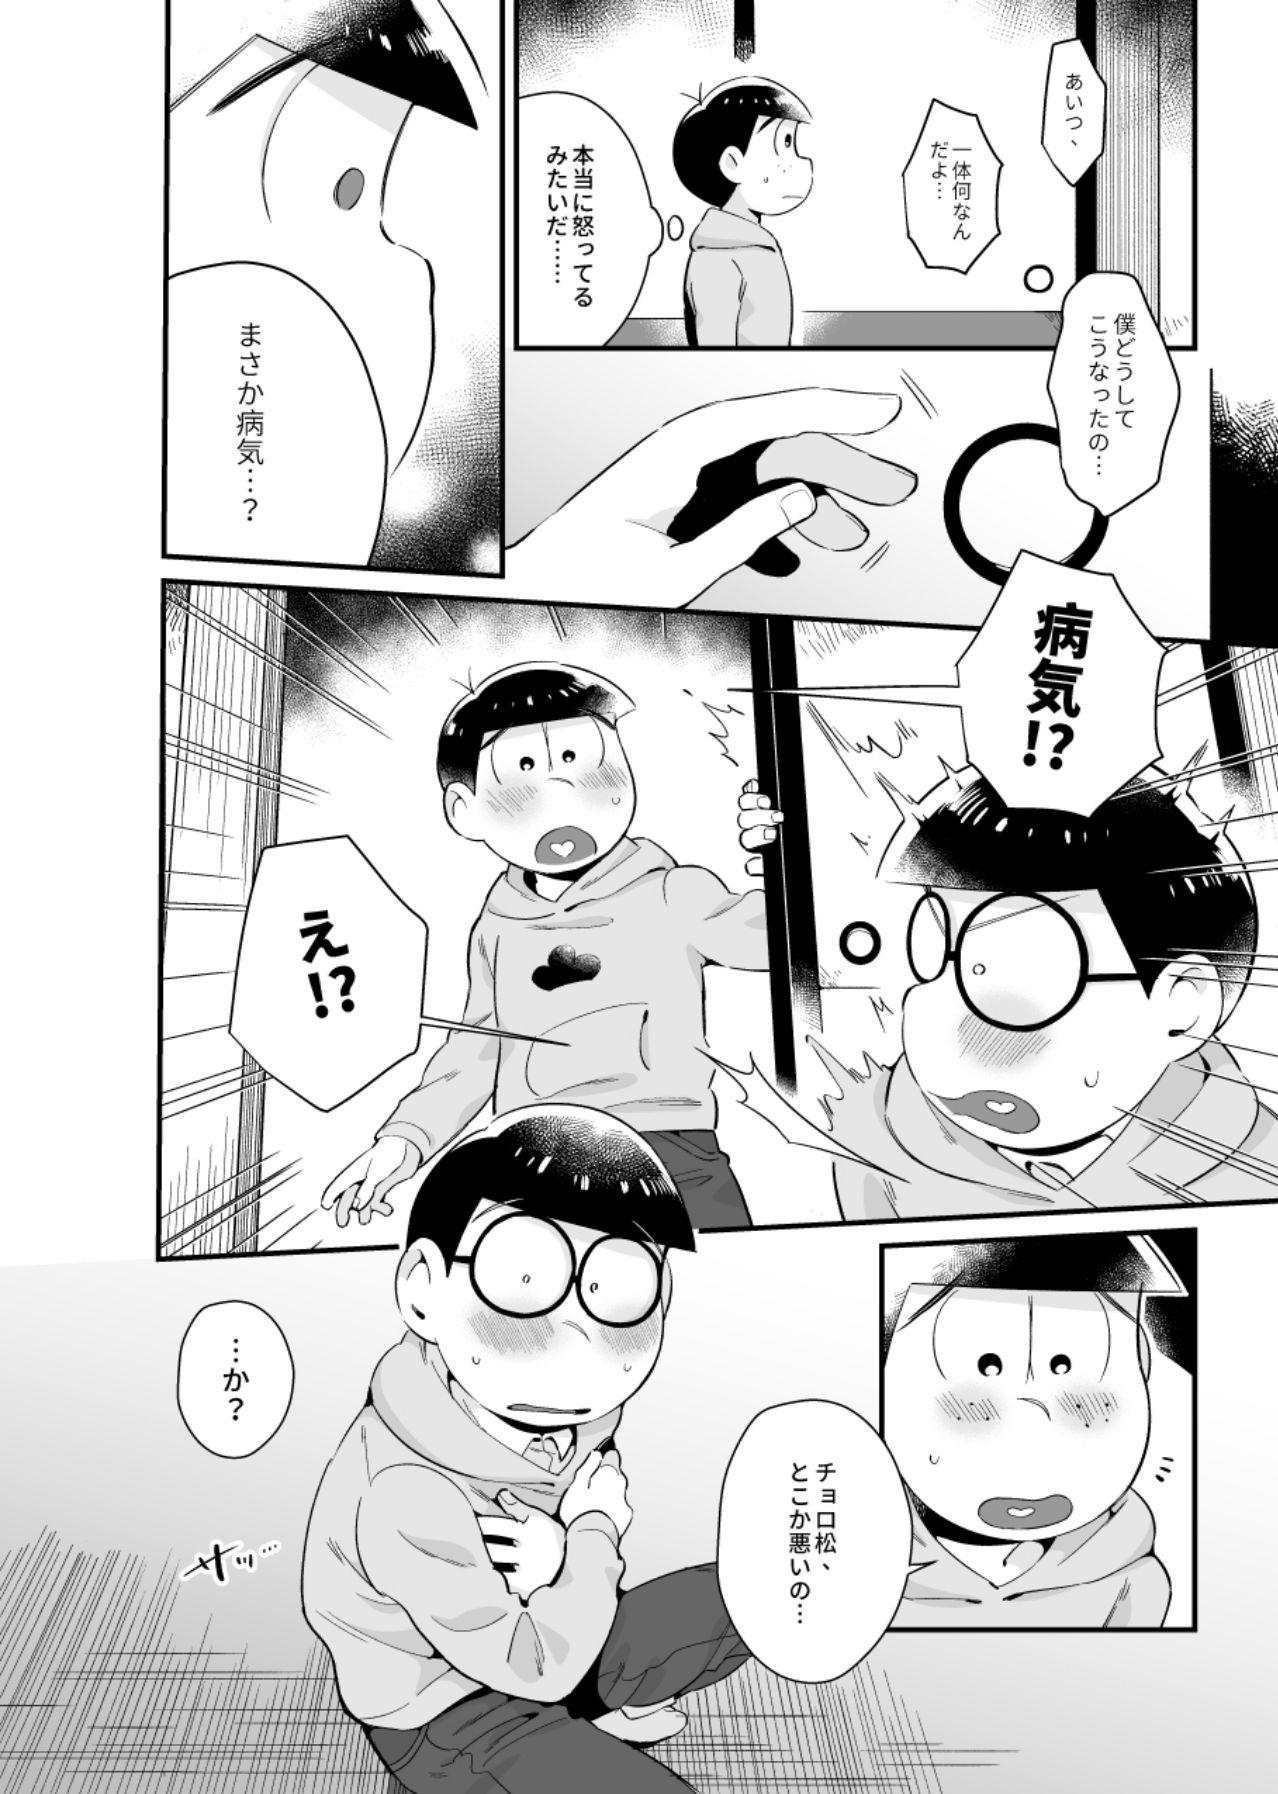 Buttfucking Bokutachi no shishunki - Osomatsu-san Gay Shaved - Page 11